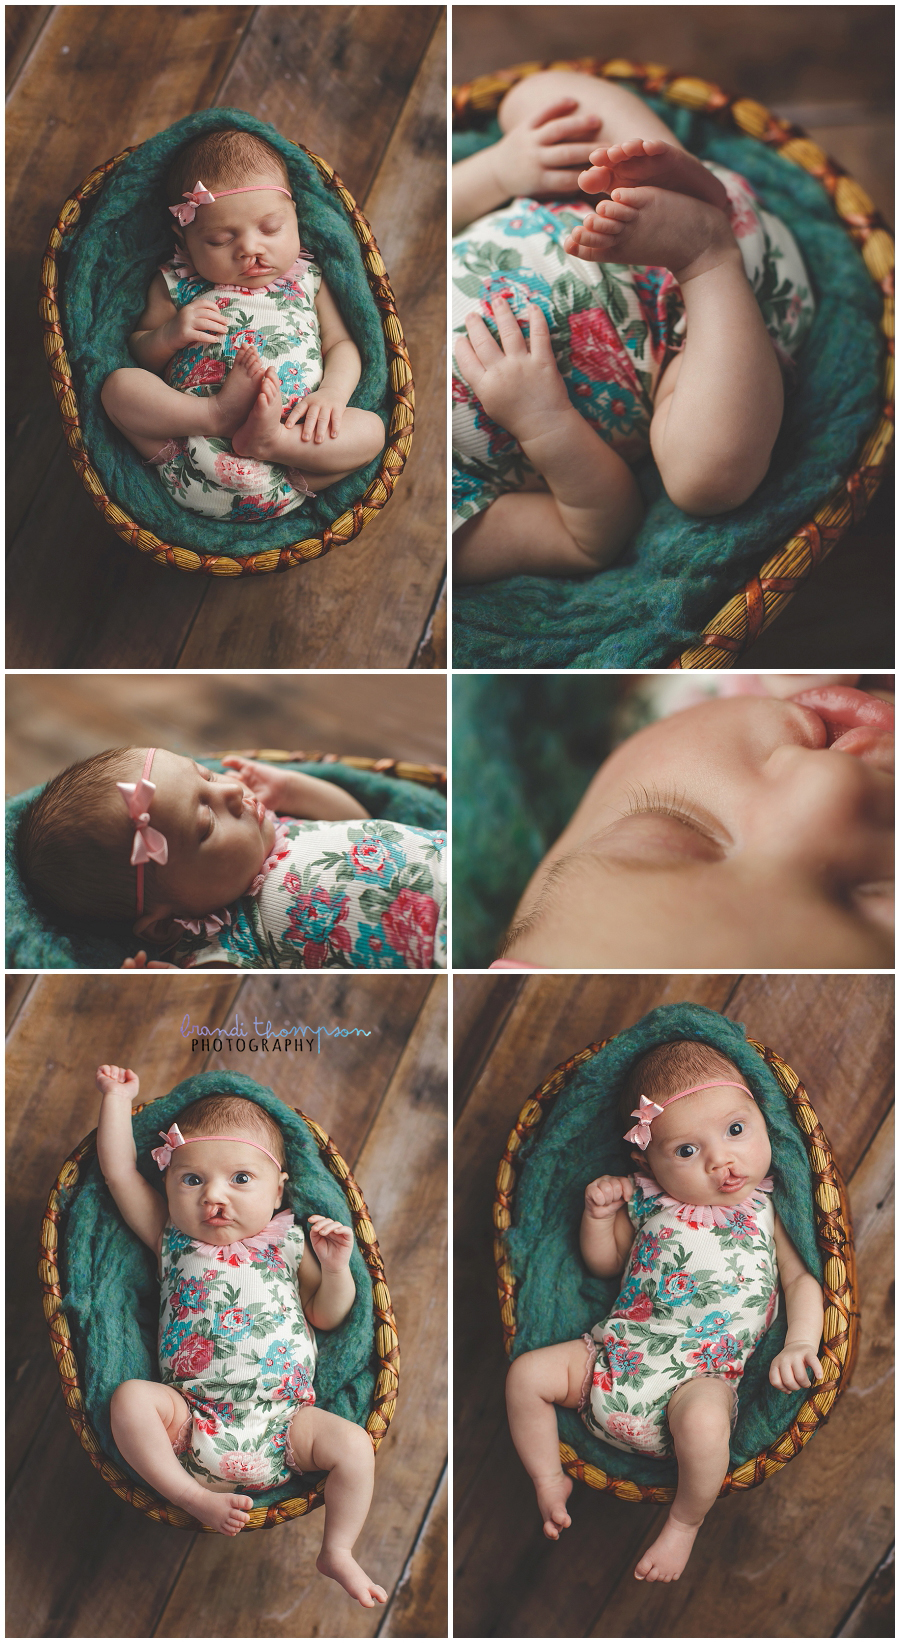 plano newborn photographer